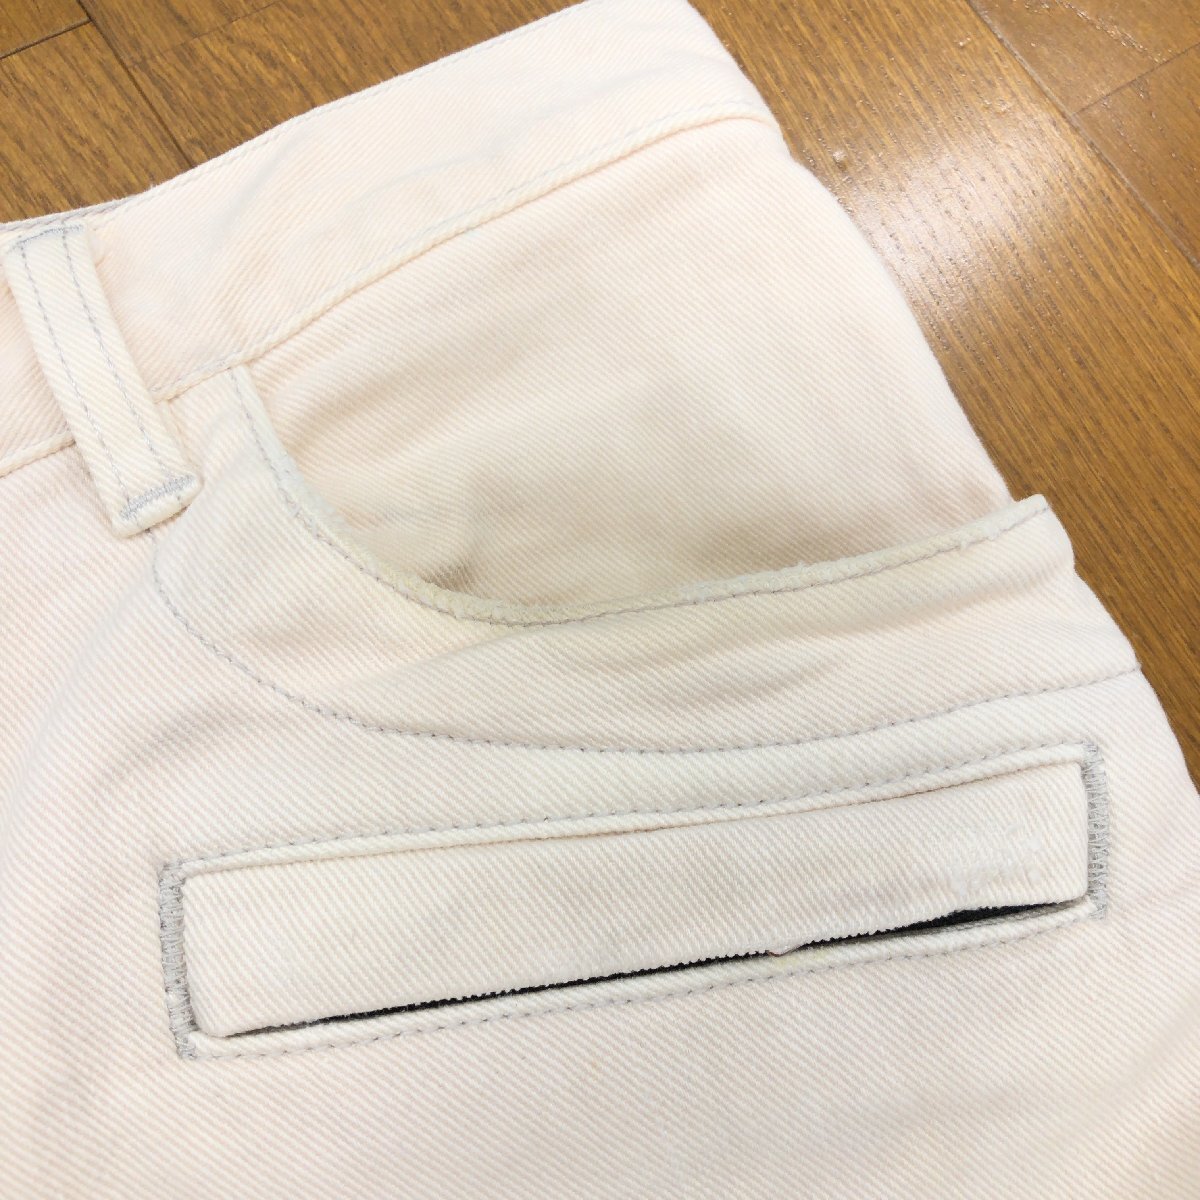 *BALMAIN Balmain USED обработка стрейч Biker Denim брюки 27 w78 слоновая кость джинсы обтягивающий брюки сделано в Японии внутренний стандартный товар мужской 